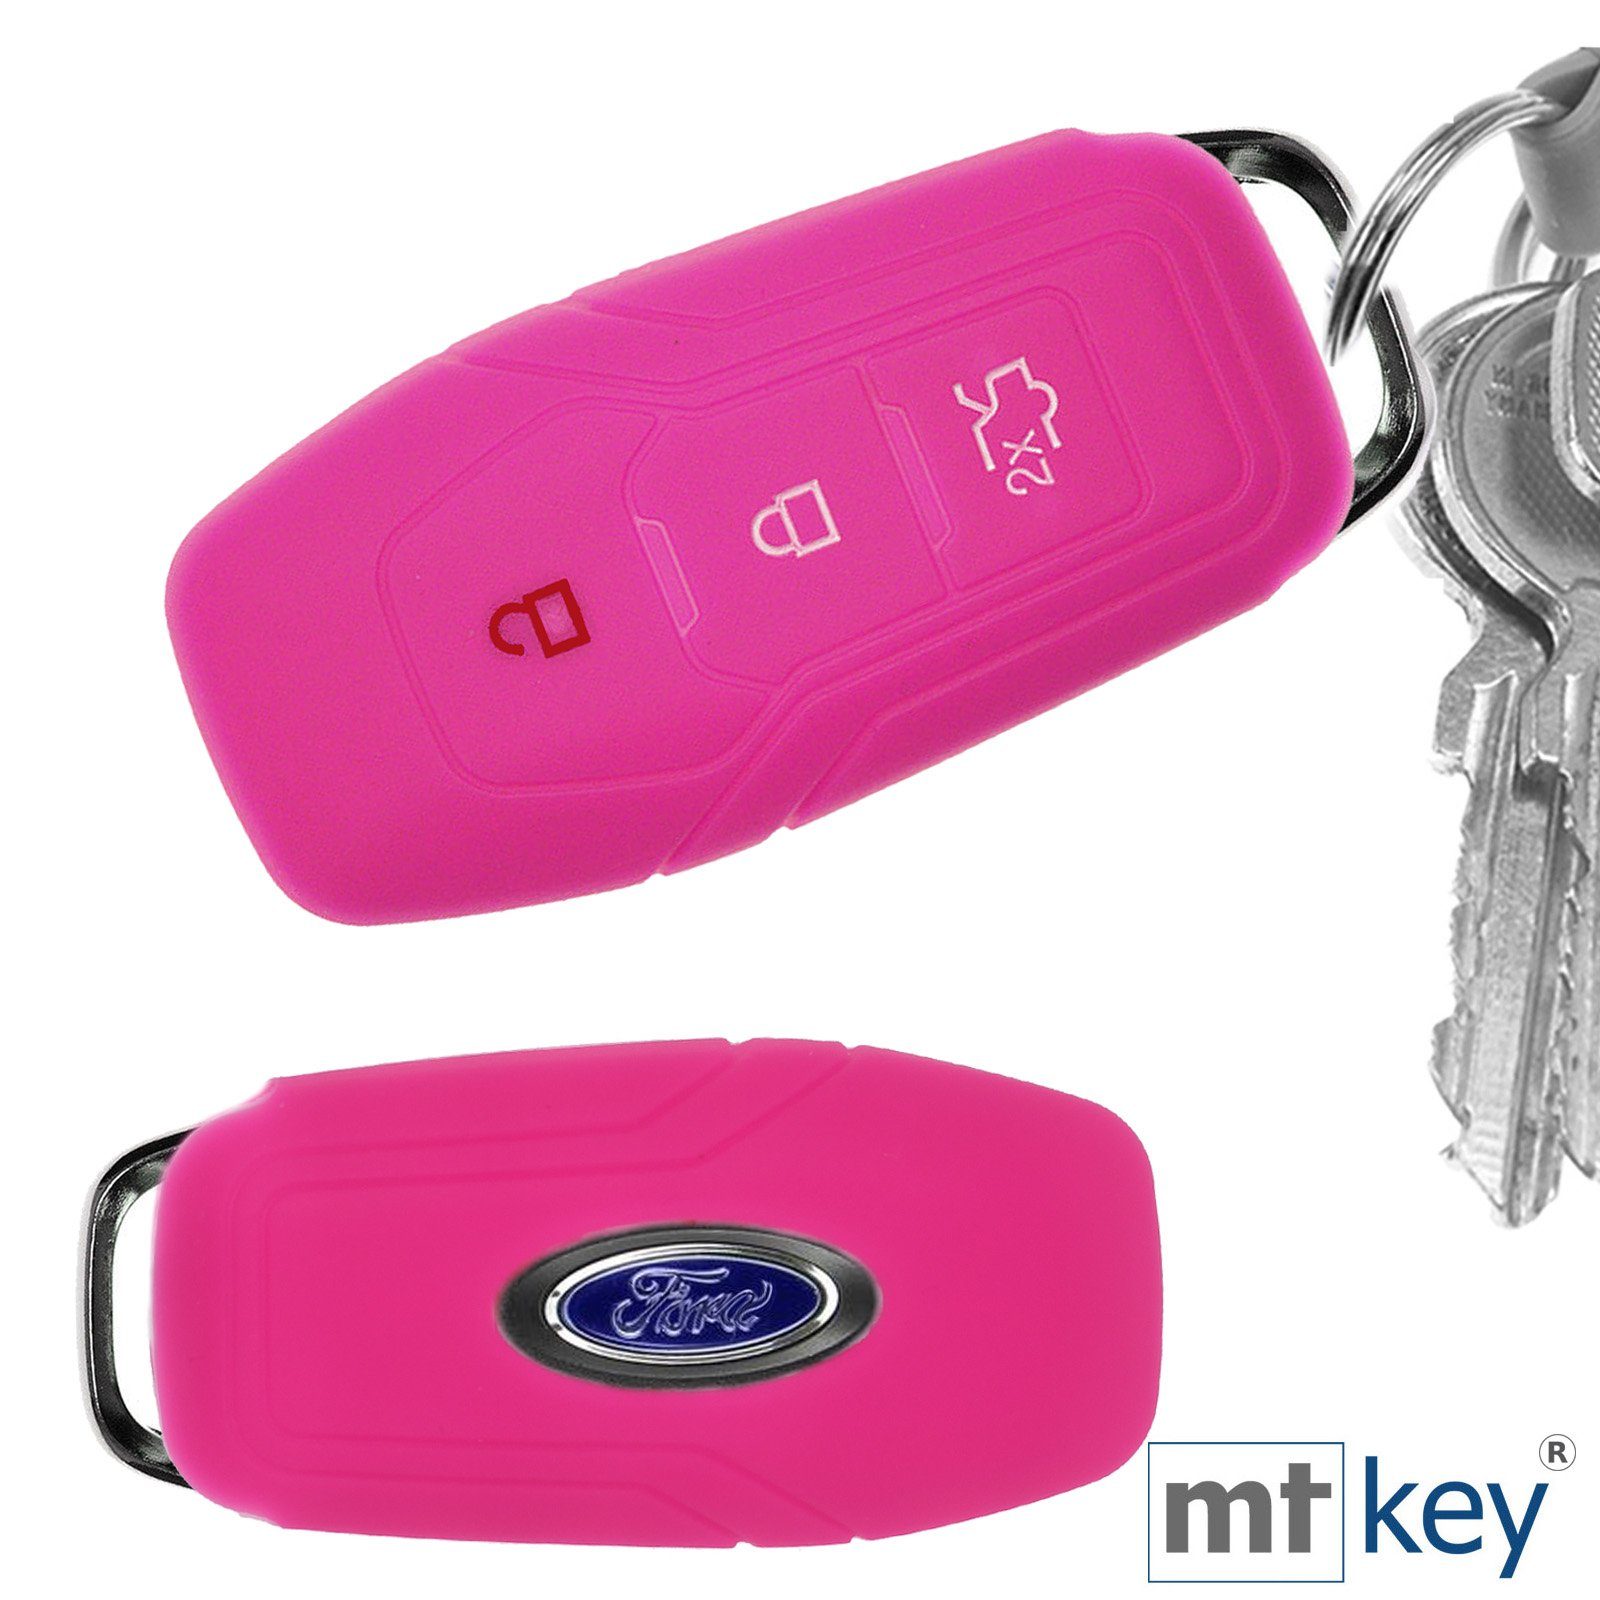 mt-key Schlüsseltasche Autoschlüssel Softcase Silikon Schutzhülle Pink, für Ford Mustang Mondeo V Turnier Fiesta Focus Galaxy Kuga 3 Tasten